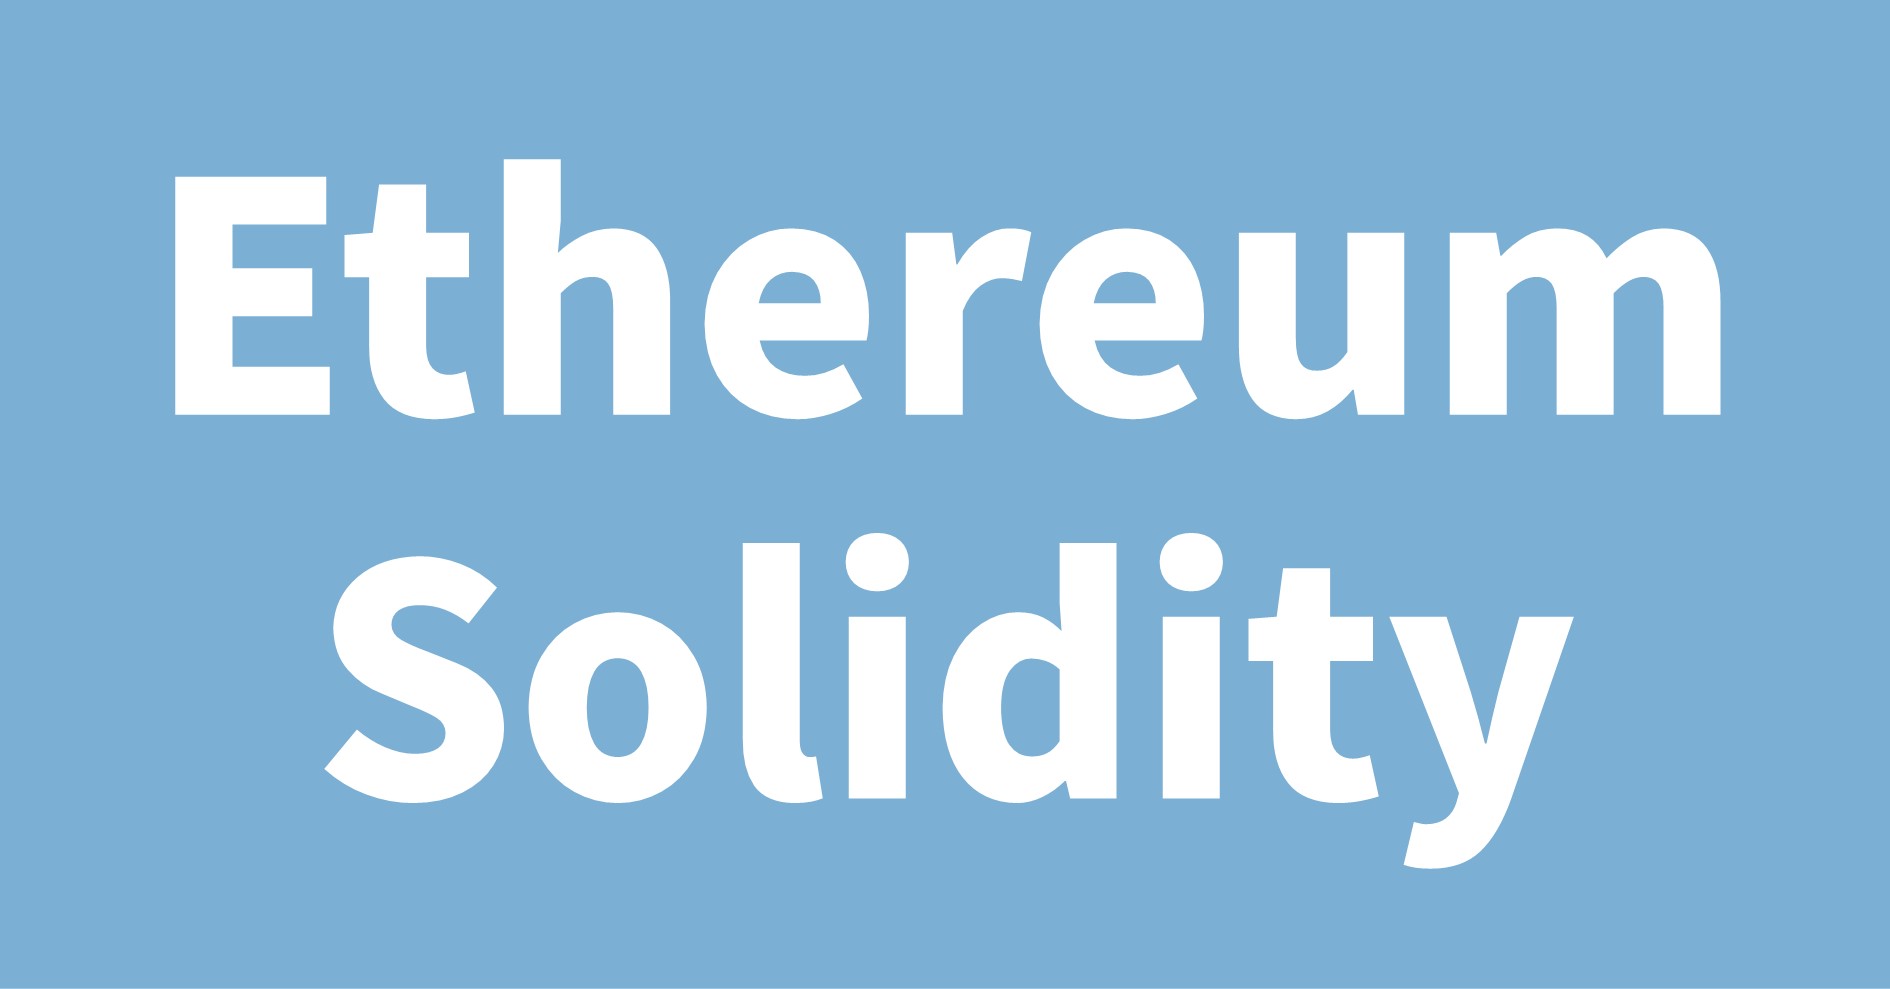 Ethereum Solidity